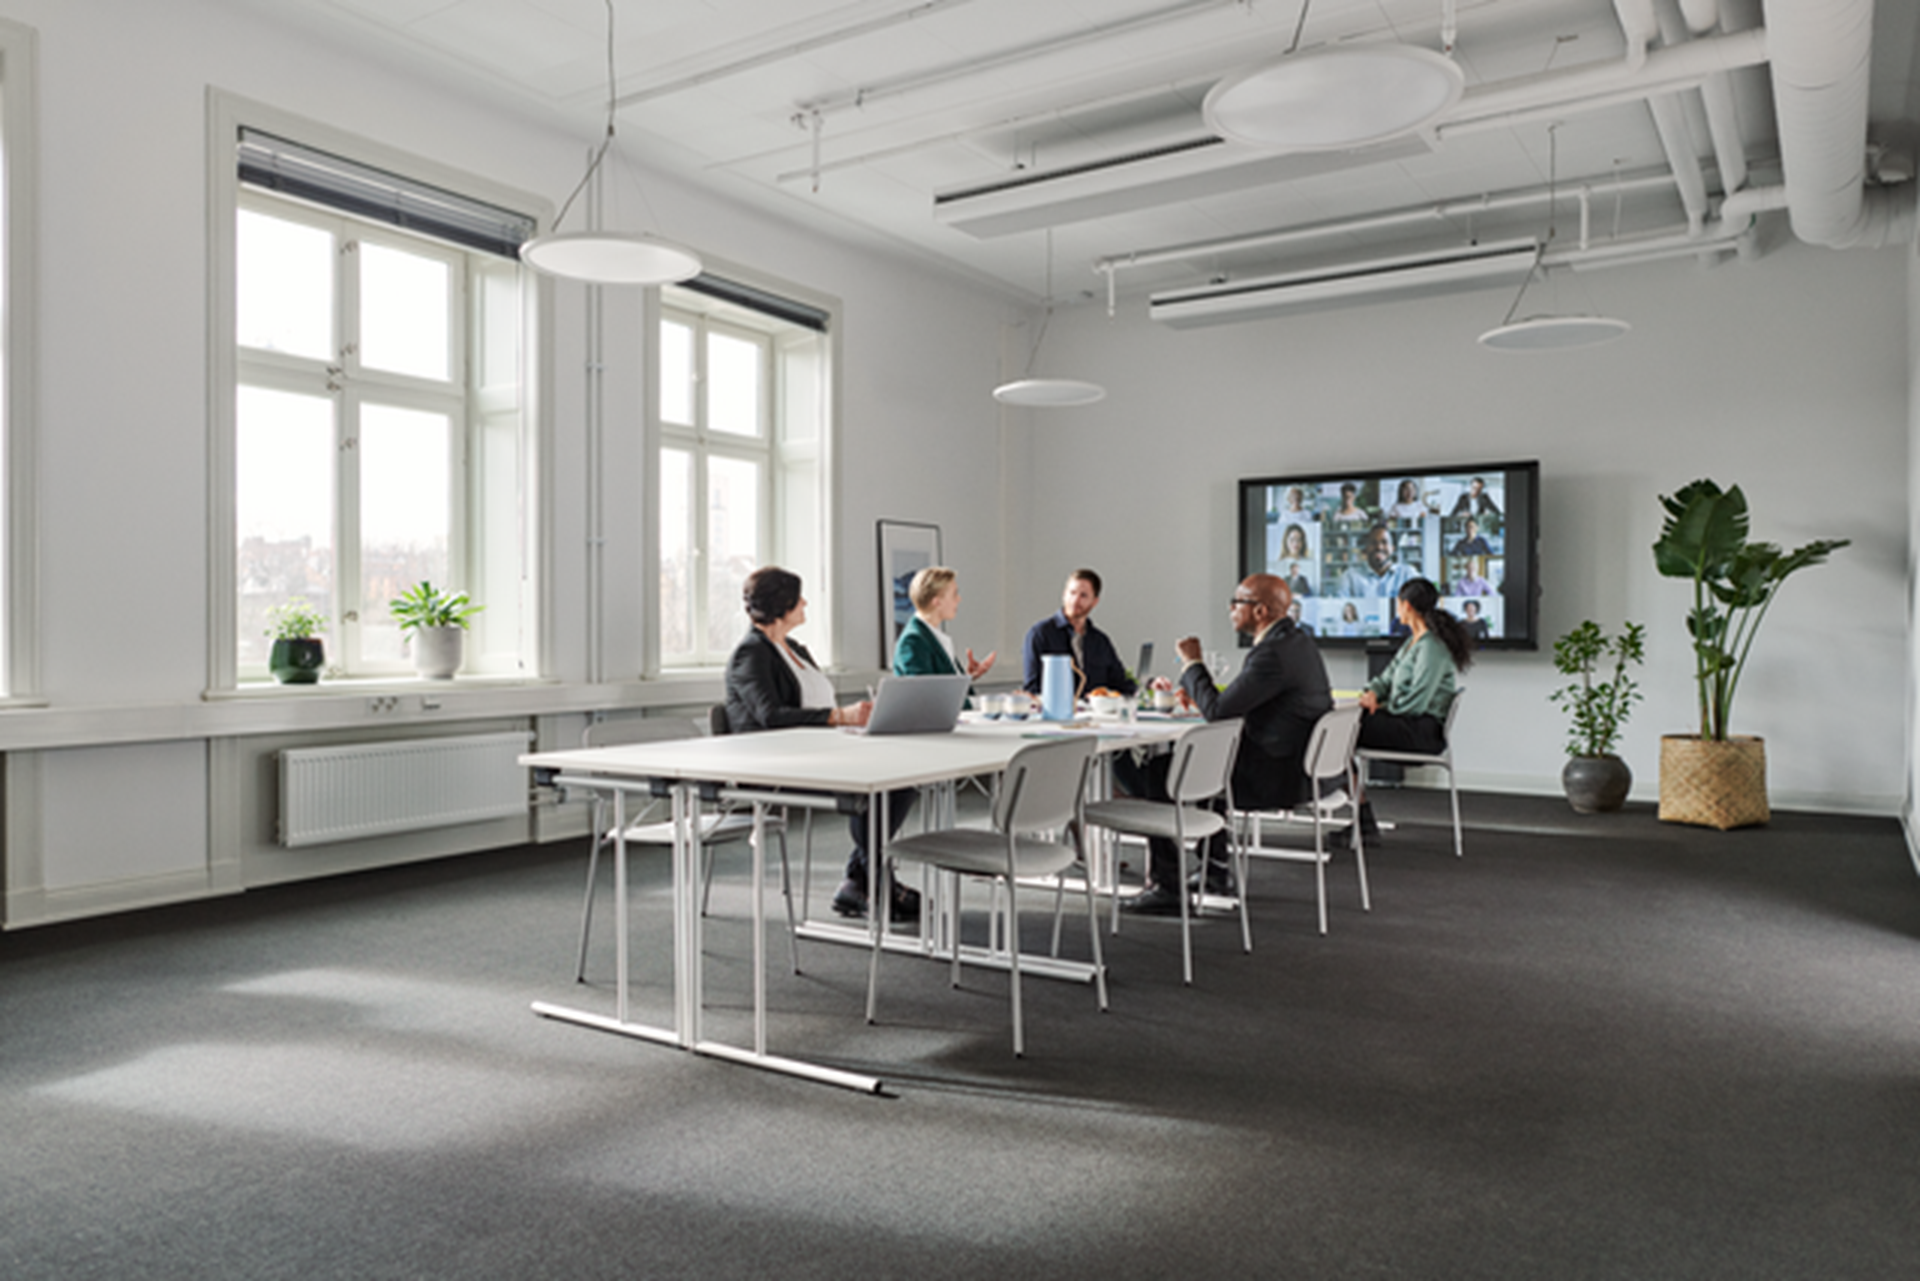 Collega's in hybride vergadering over termijnbedrag met 5 op kantoor aan een vergadertafel en de rest online op een groot scherm